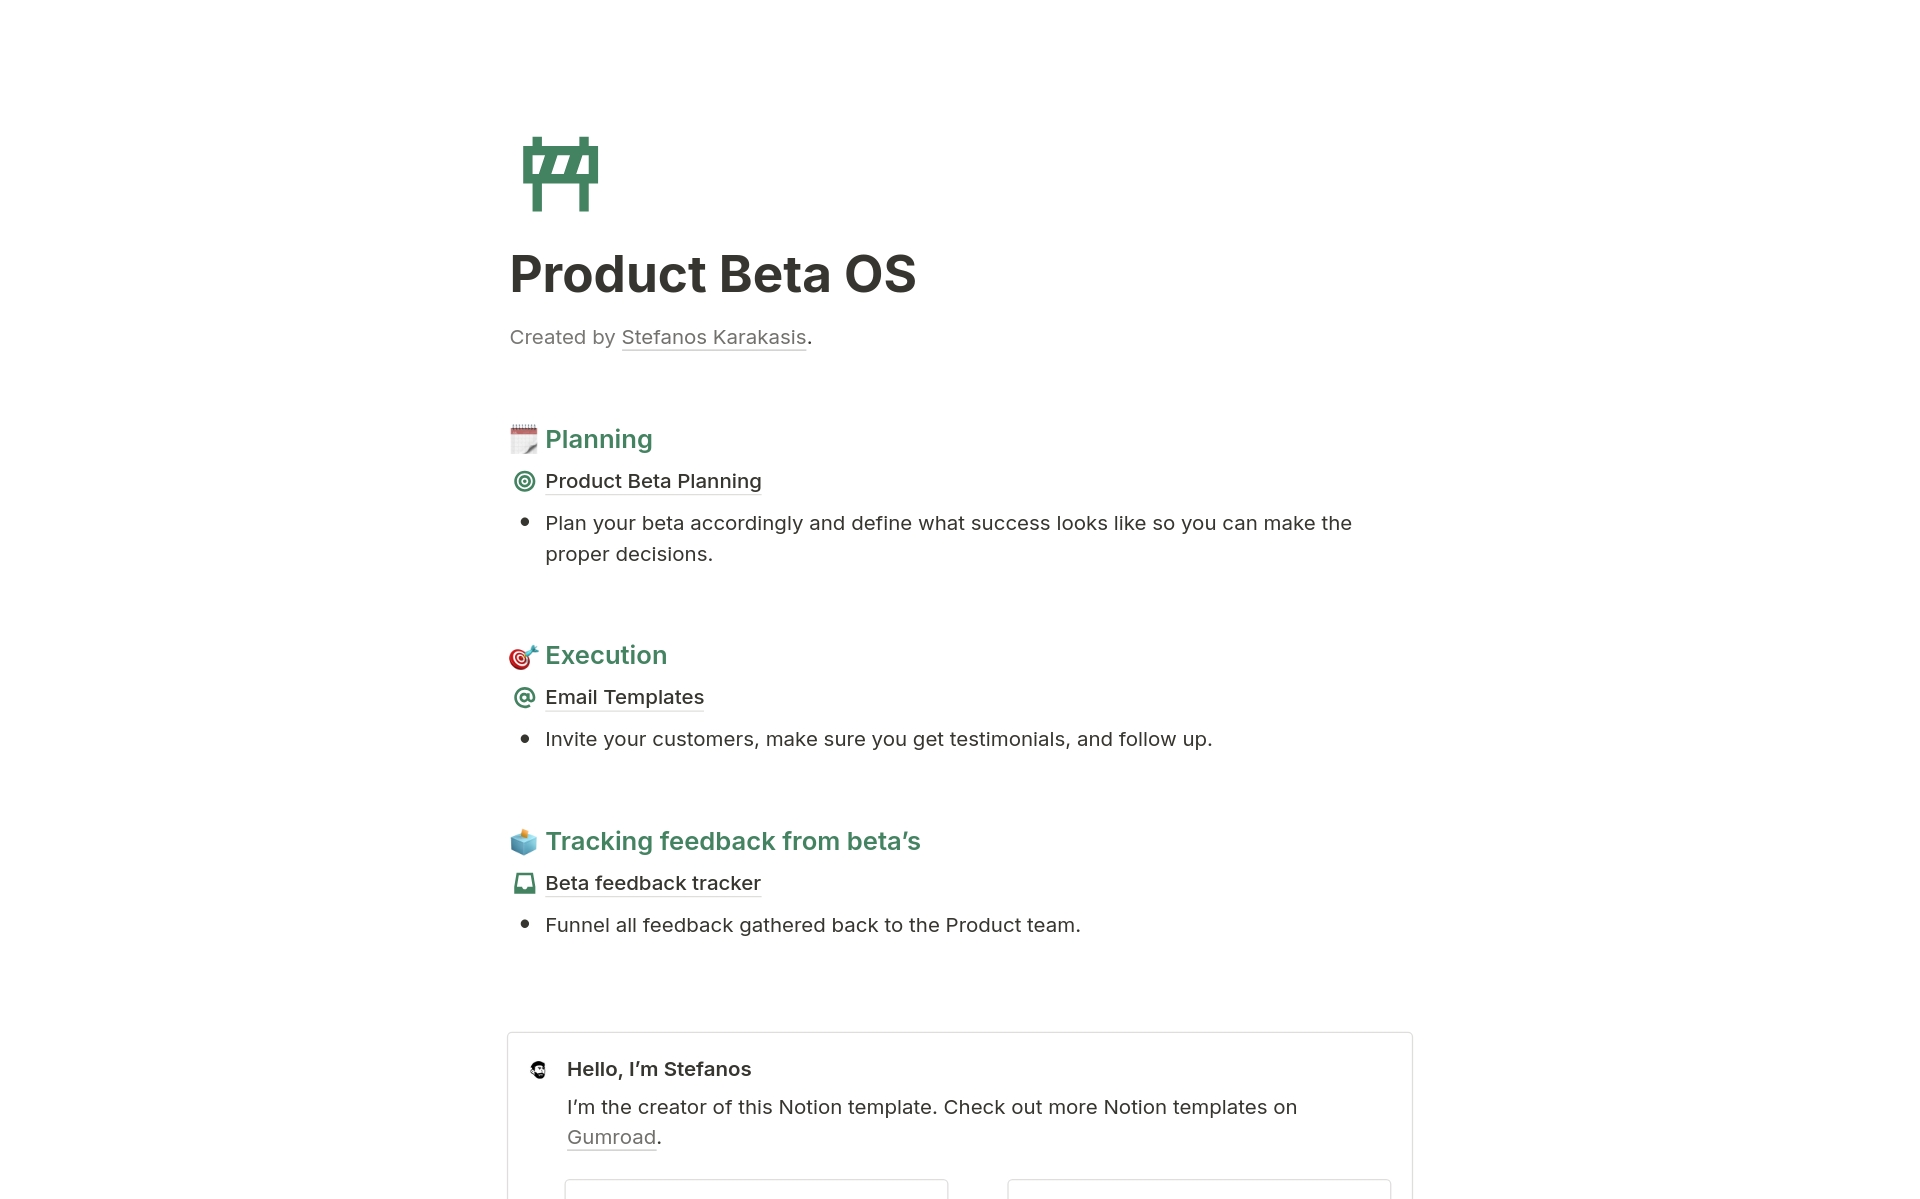 Uma prévia do modelo para Product Beta OS